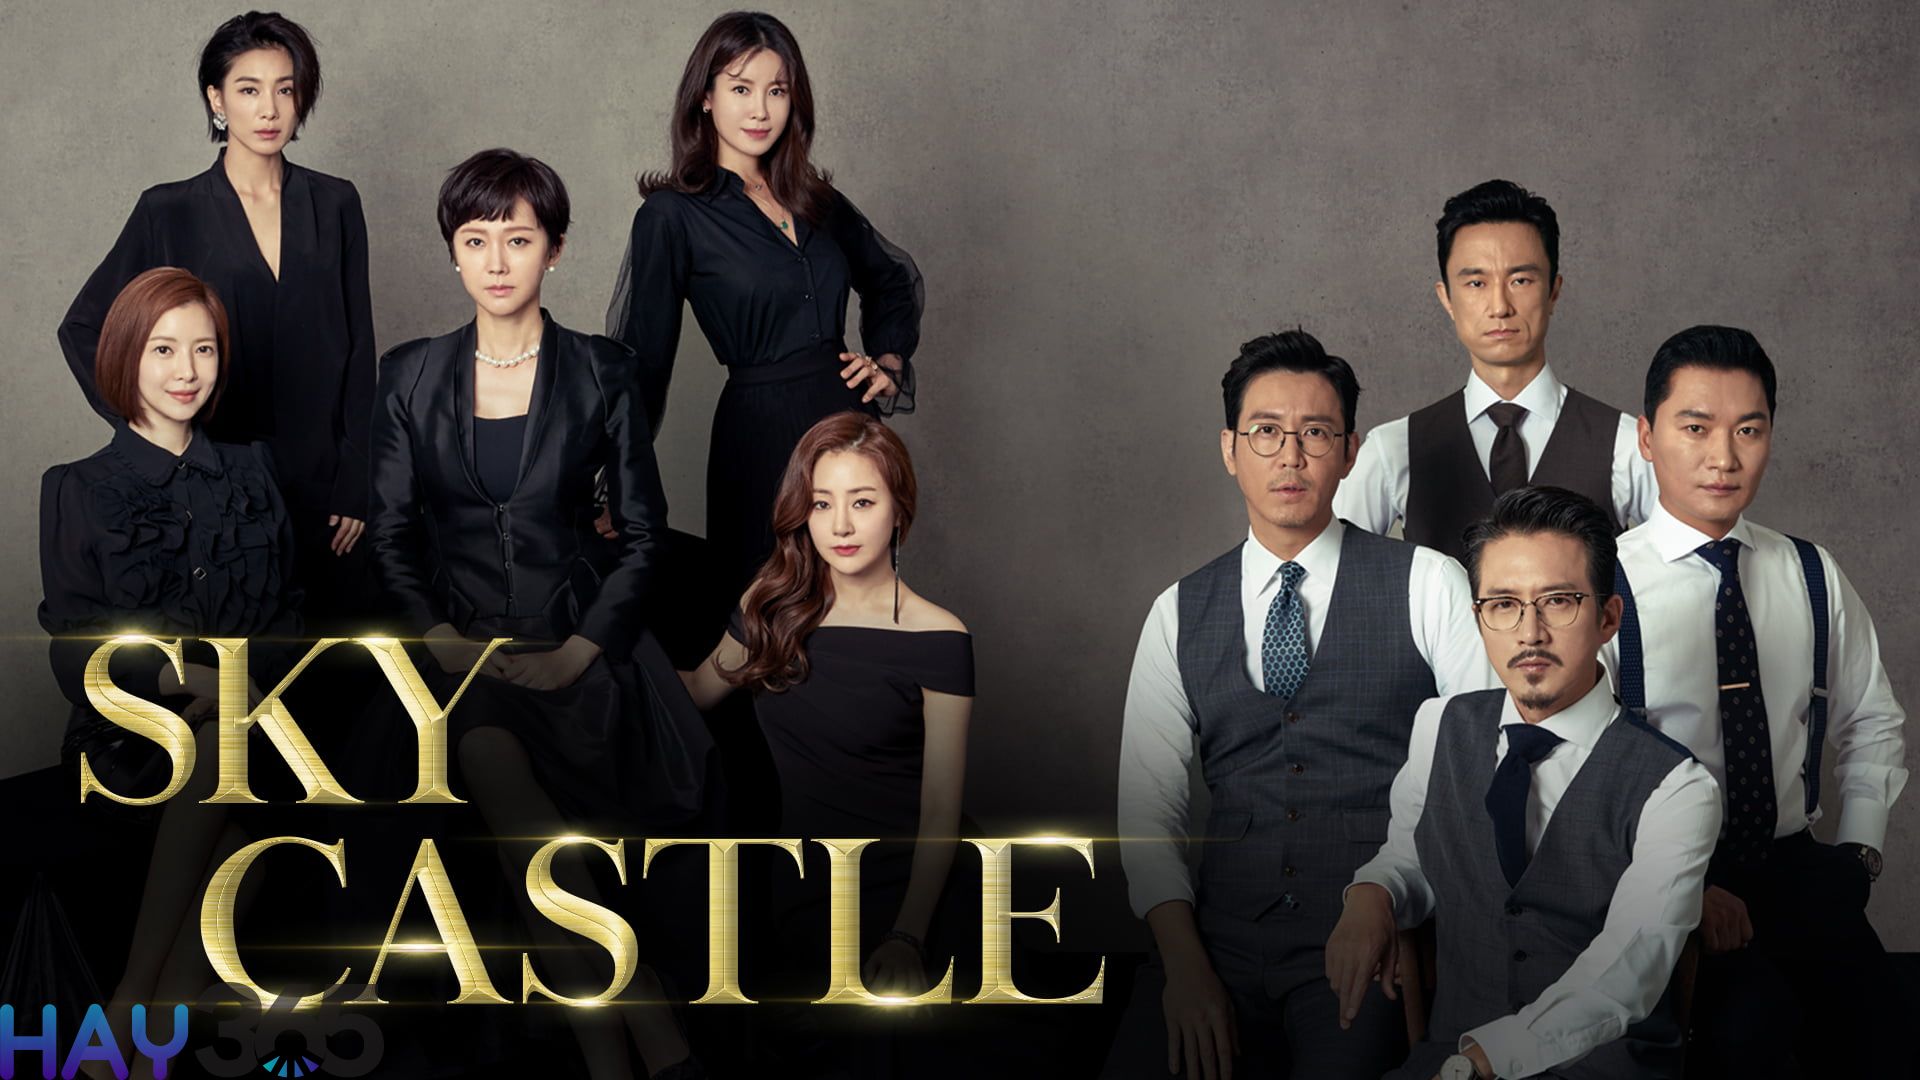 SKY Castle là bộ phim truyền hình Hàn Quốc gây sốt tại thời điểm lên sóng